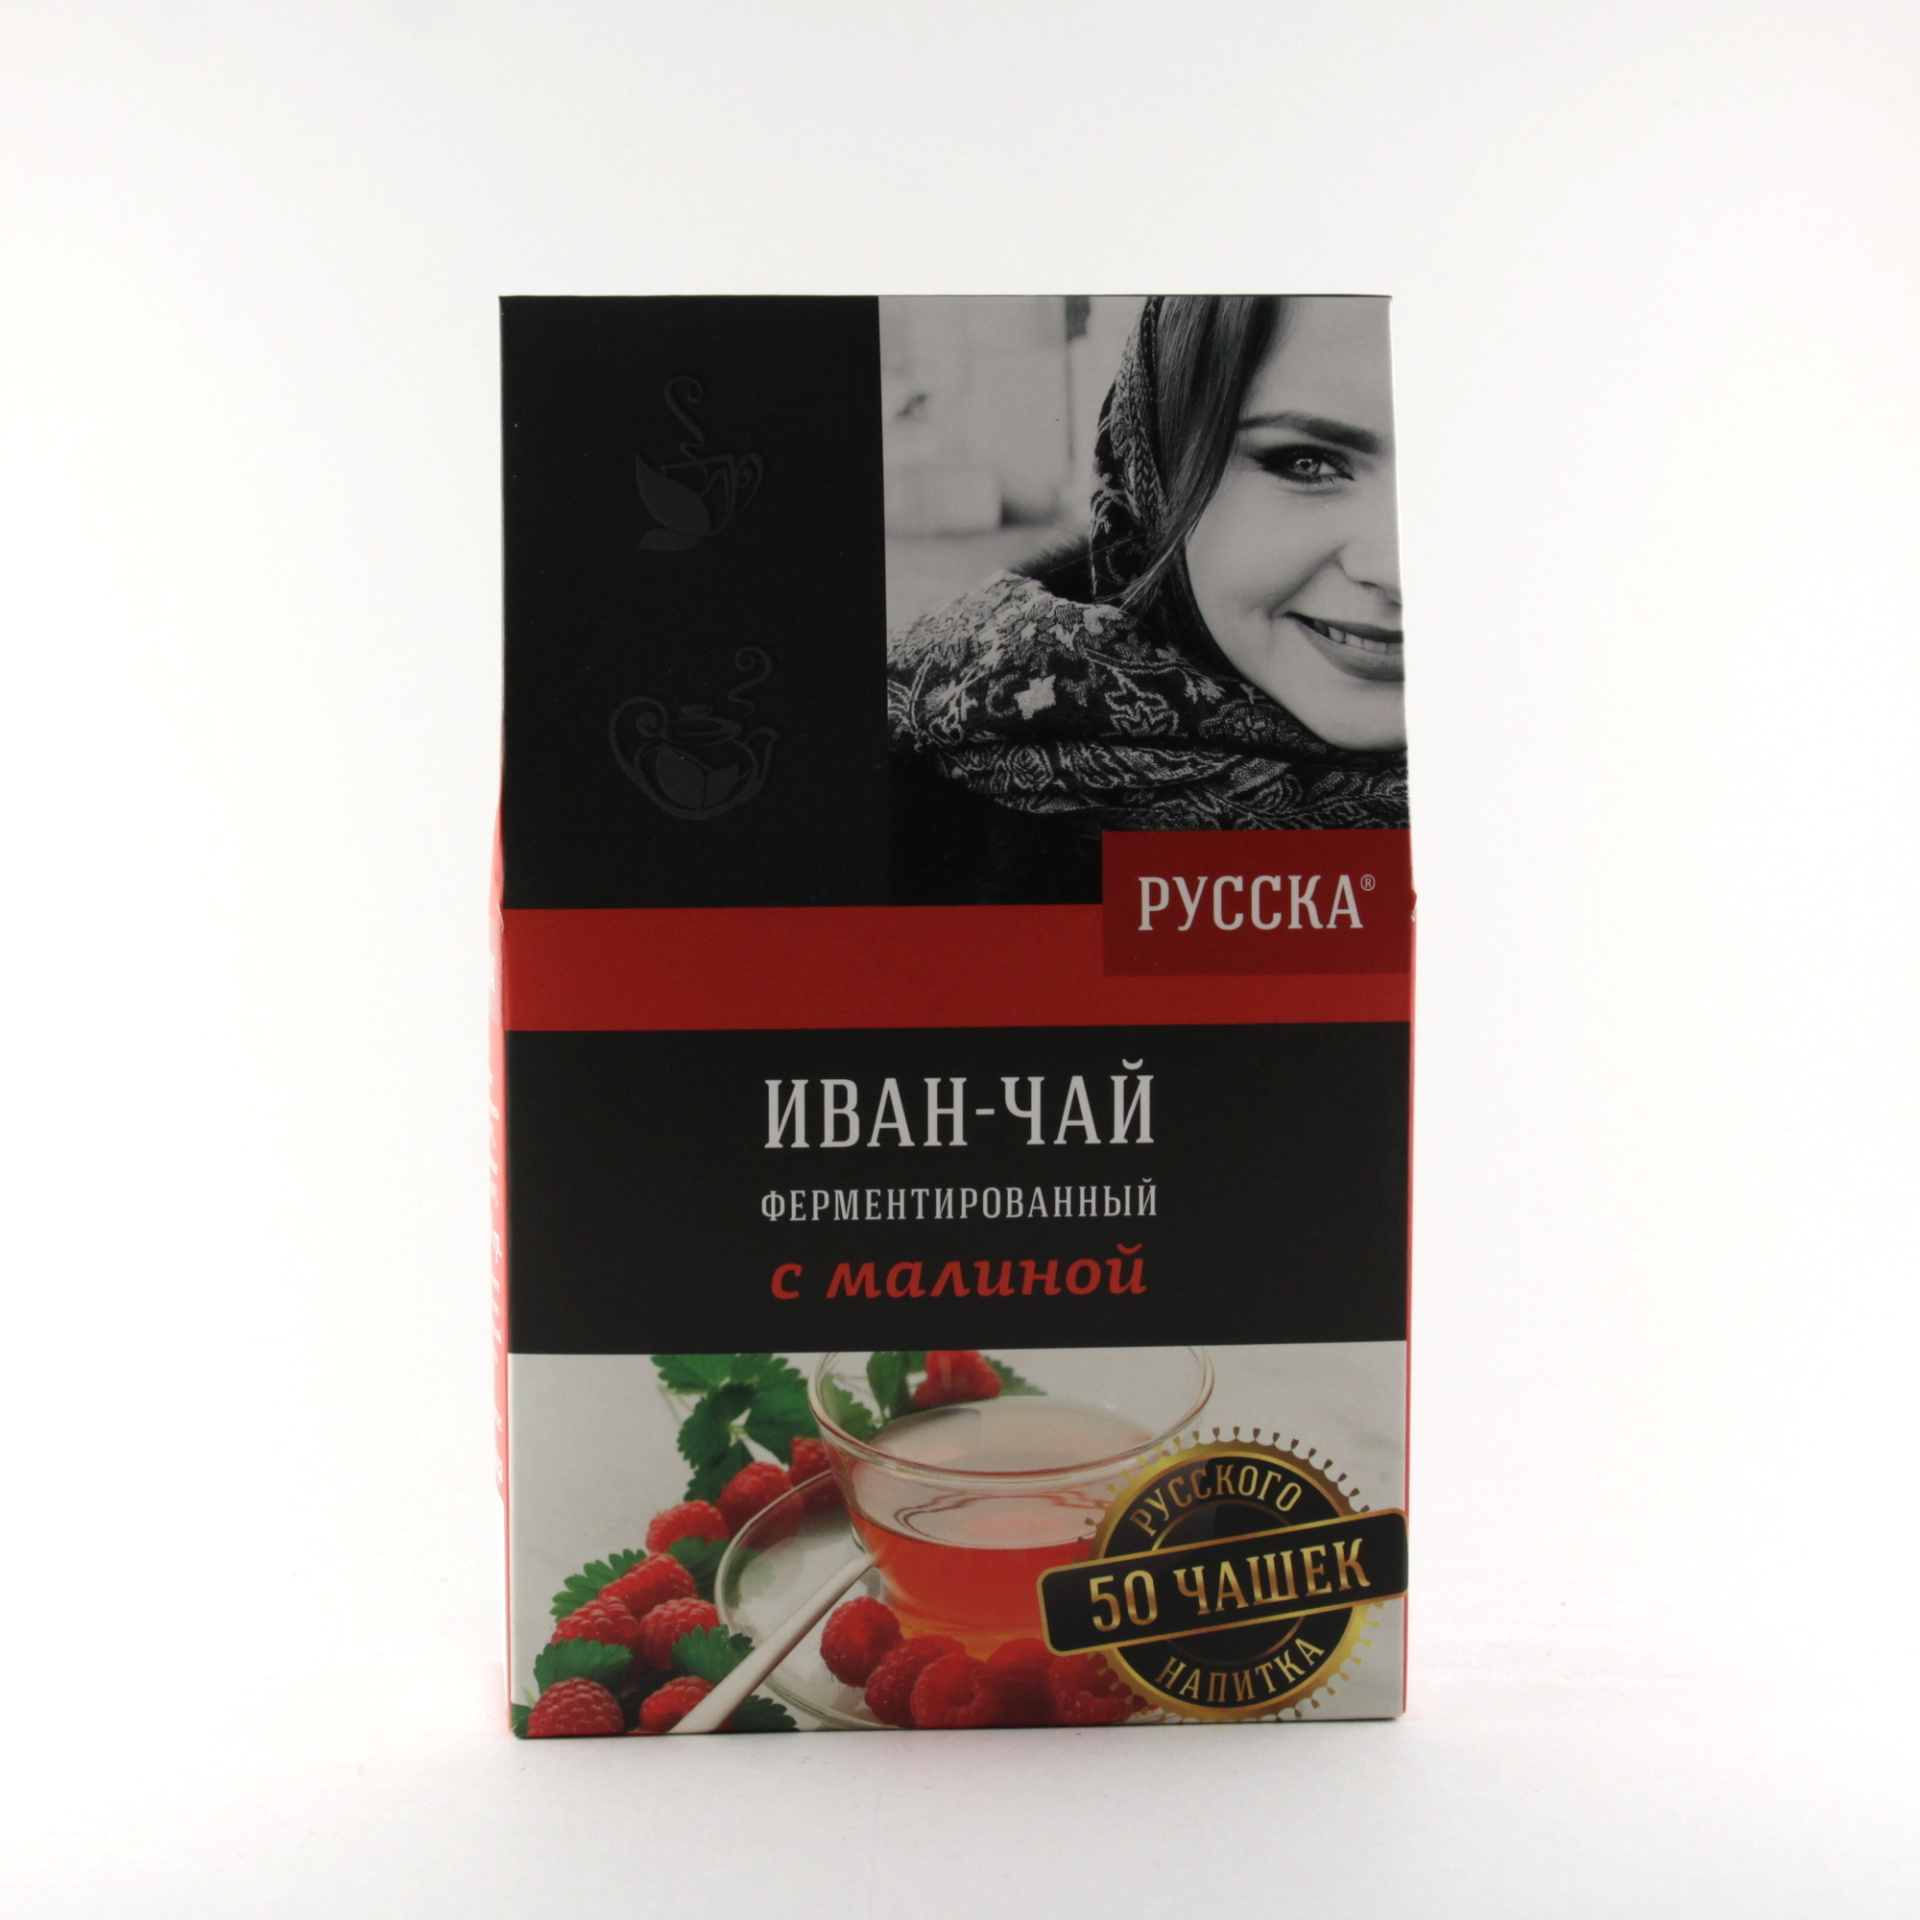 Иван чай «Русска» ферментированный c малиной